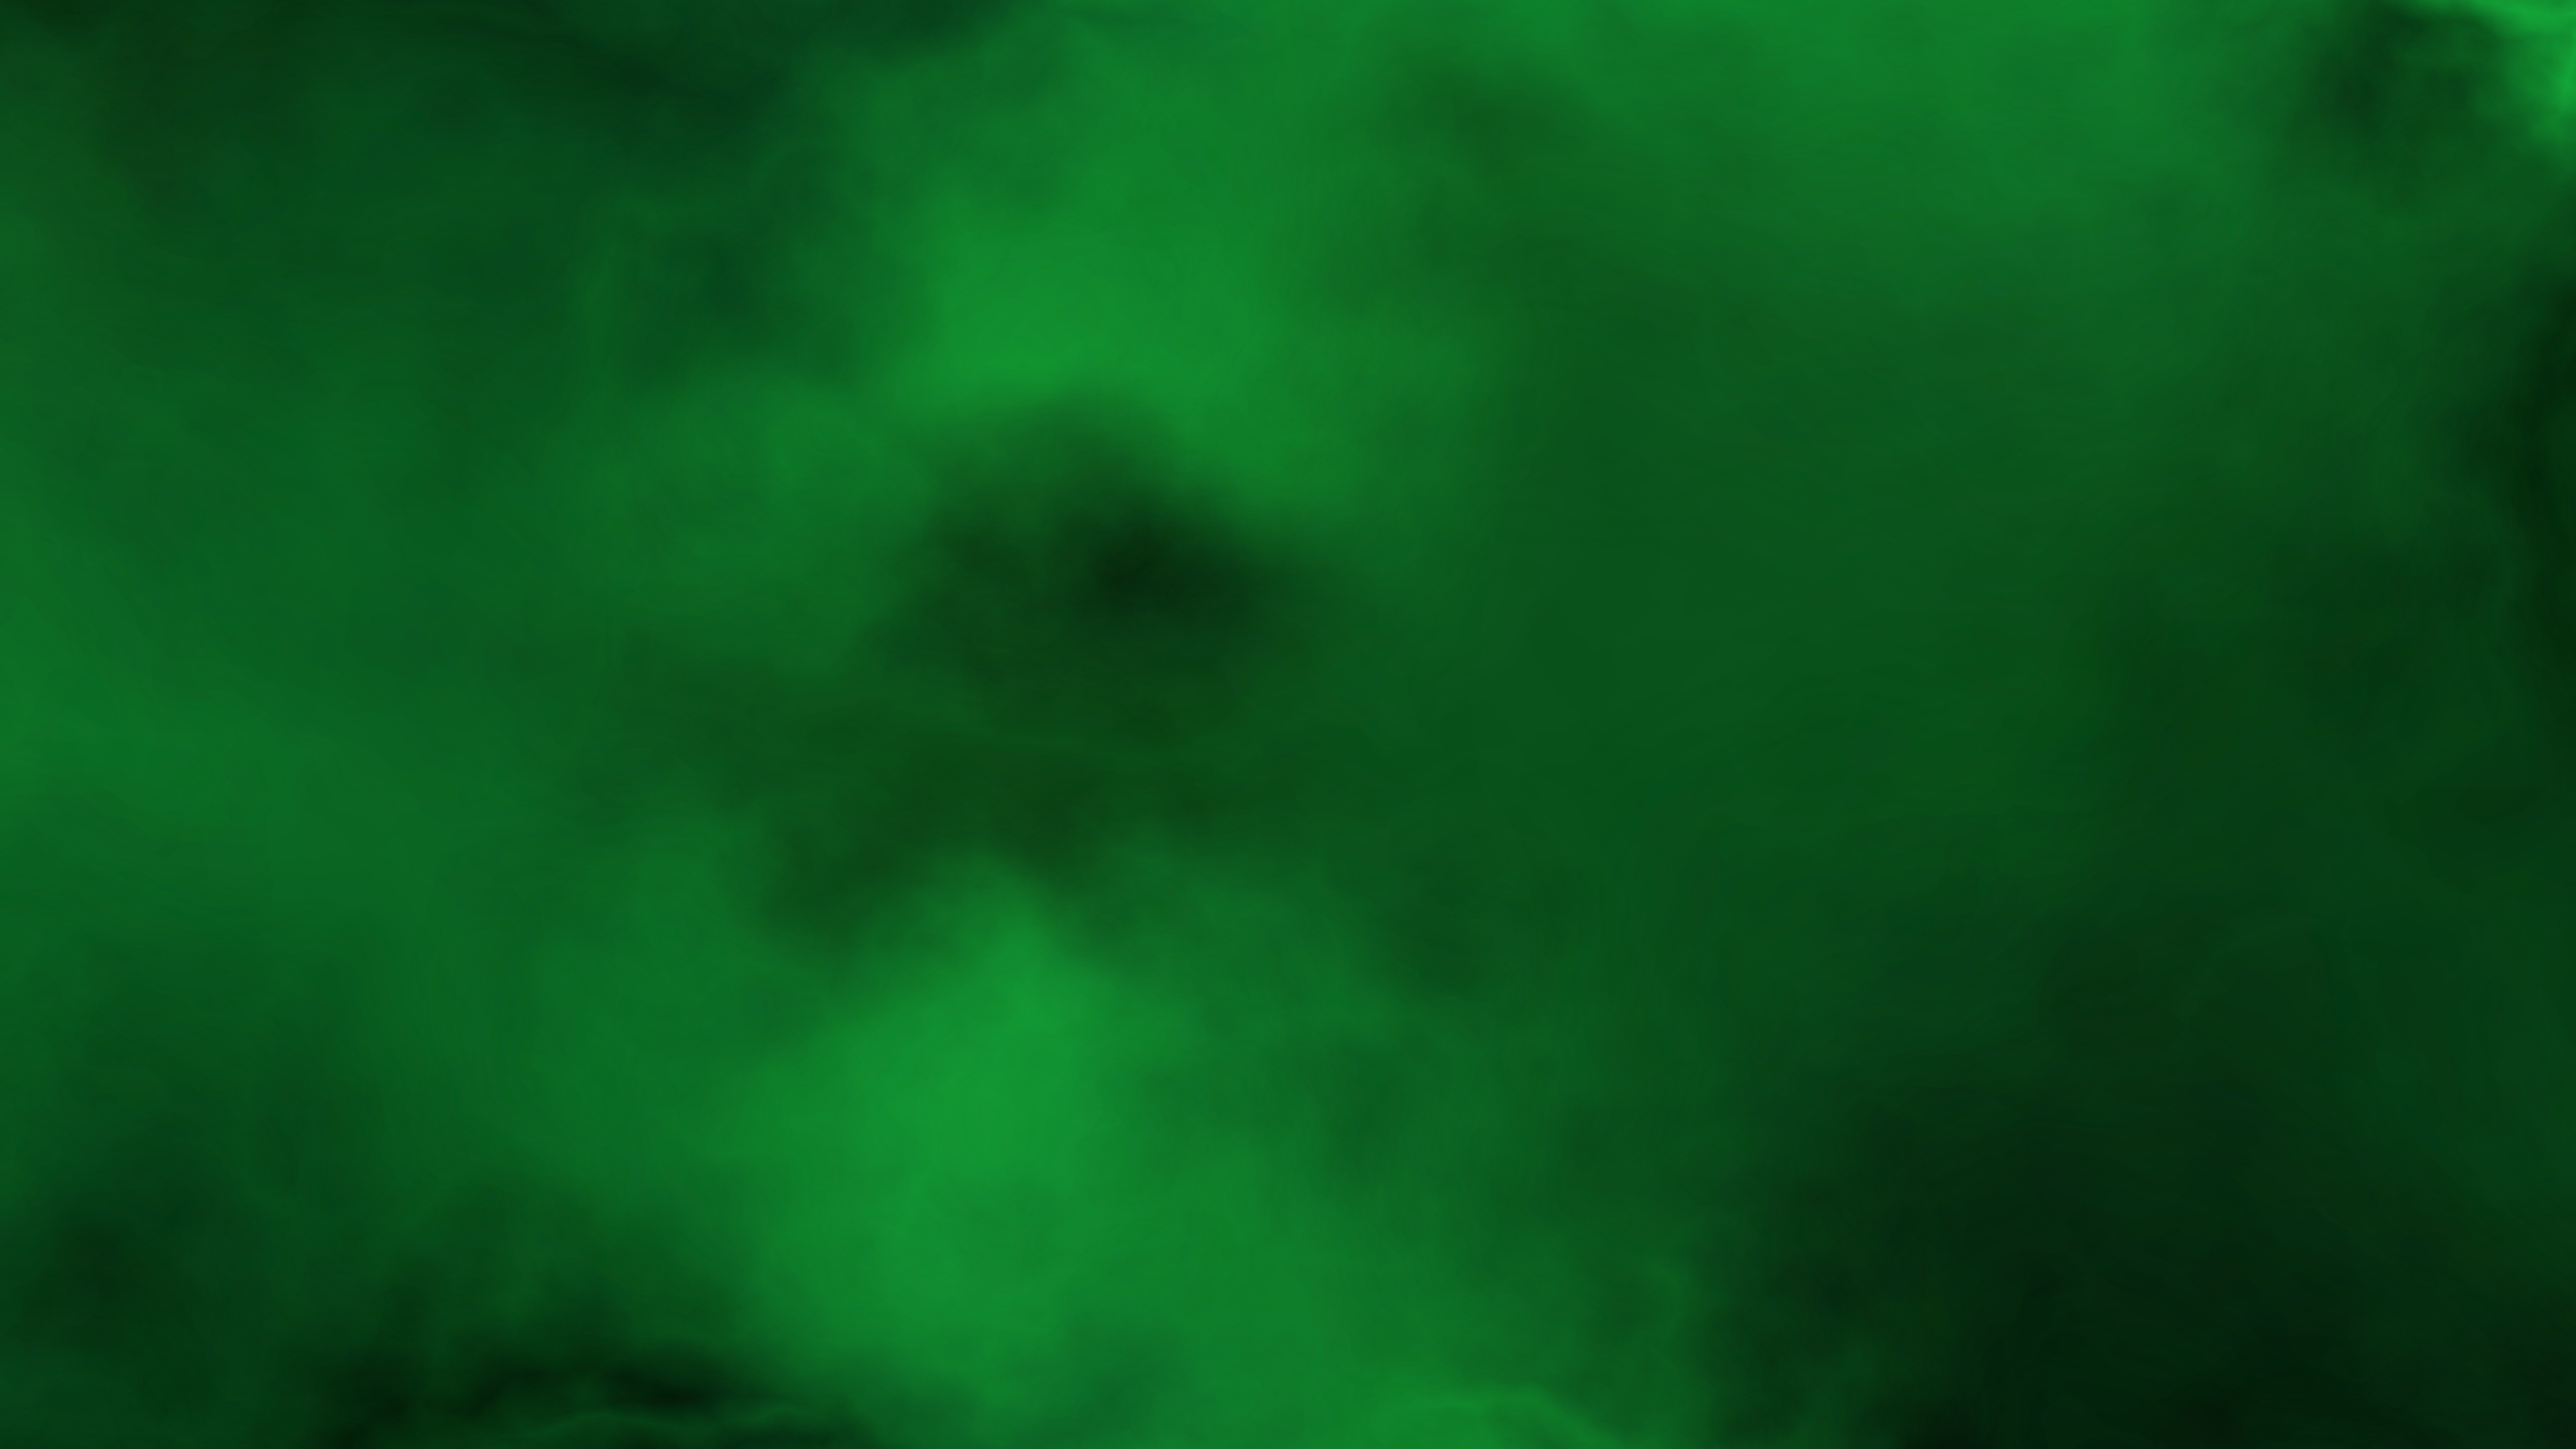 dark green textured background